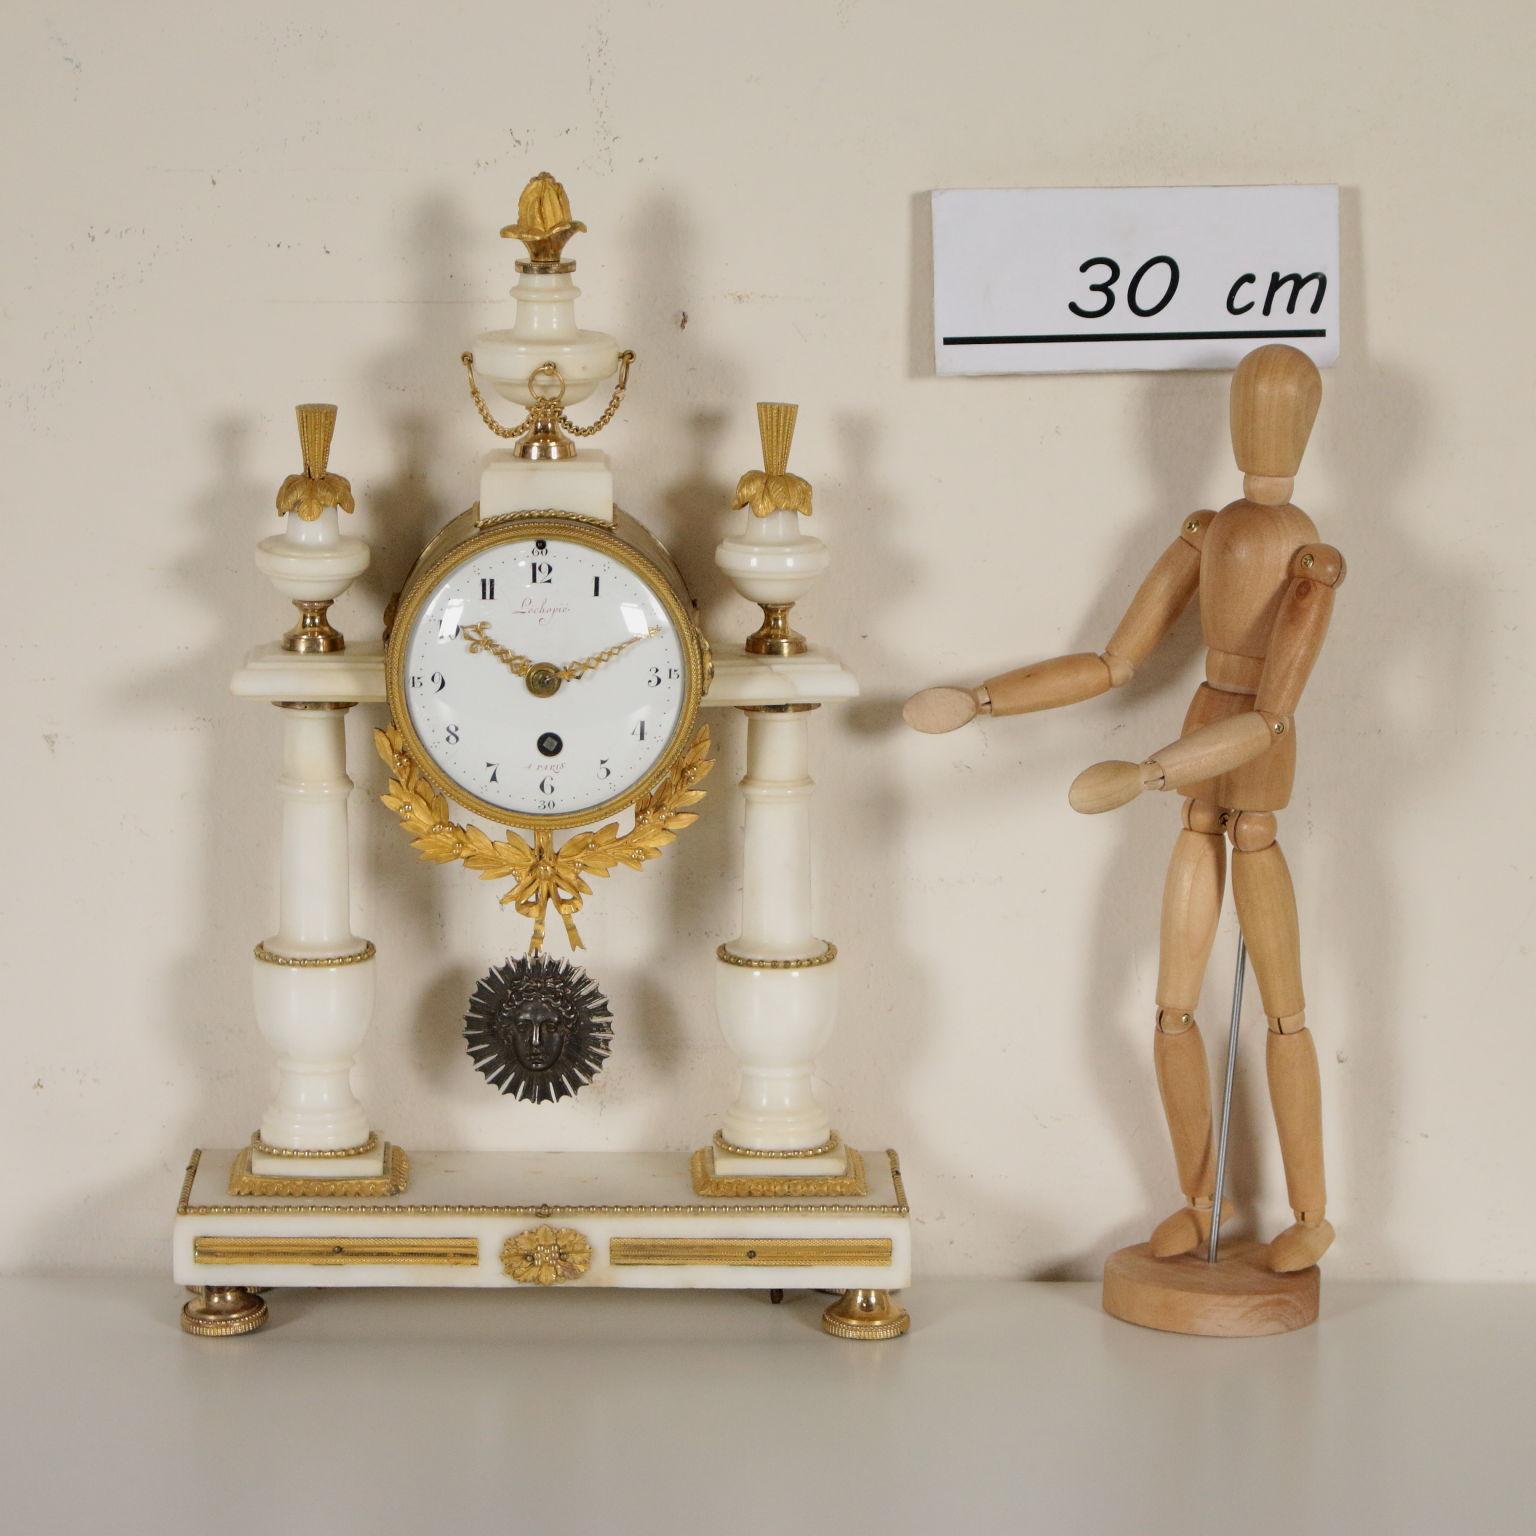 Une horloge de table en marbre blanc avec des détails en bronze doré. Sous-sol rectangulaire avec deux colonnes tournées et une horloge cylindrique entre elles. Le marbre blanc est agrémenté de détails en bronze doré, d'encadrements, de flammes et